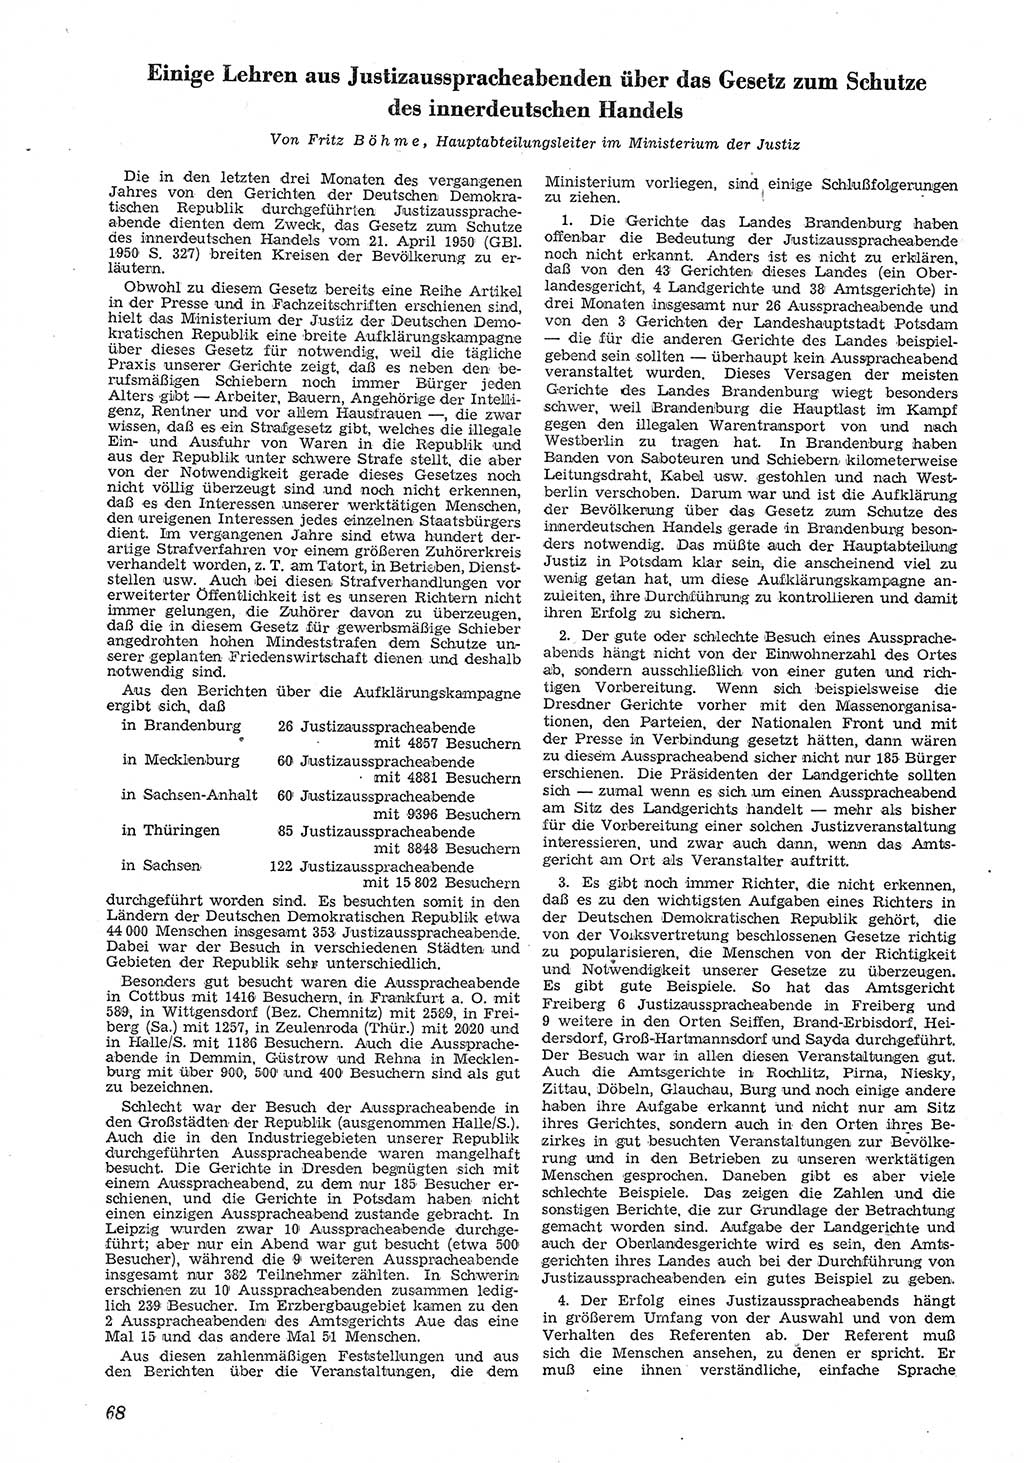 Neue Justiz (NJ), Zeitschrift für Recht und Rechtswissenschaft [Deutsche Demokratische Republik (DDR)], 6. Jahrgang 1952, Seite 68 (NJ DDR 1952, S. 68)